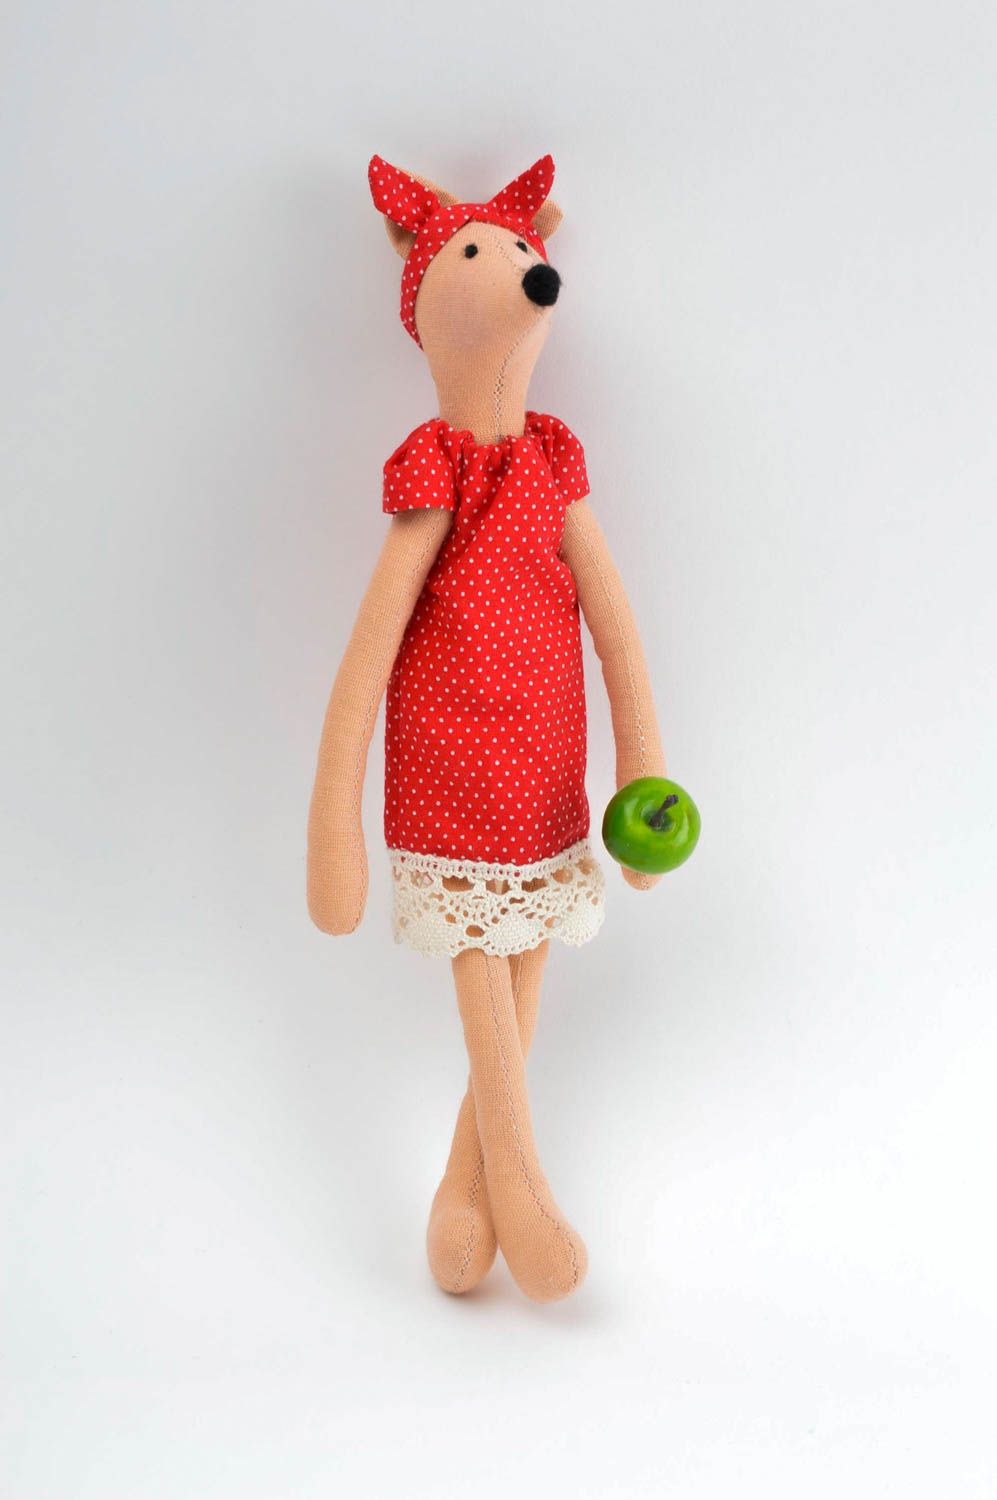 Игрушка лиса ручной работы детская игрушка для девочек мягкая игрушка красивая фото 2